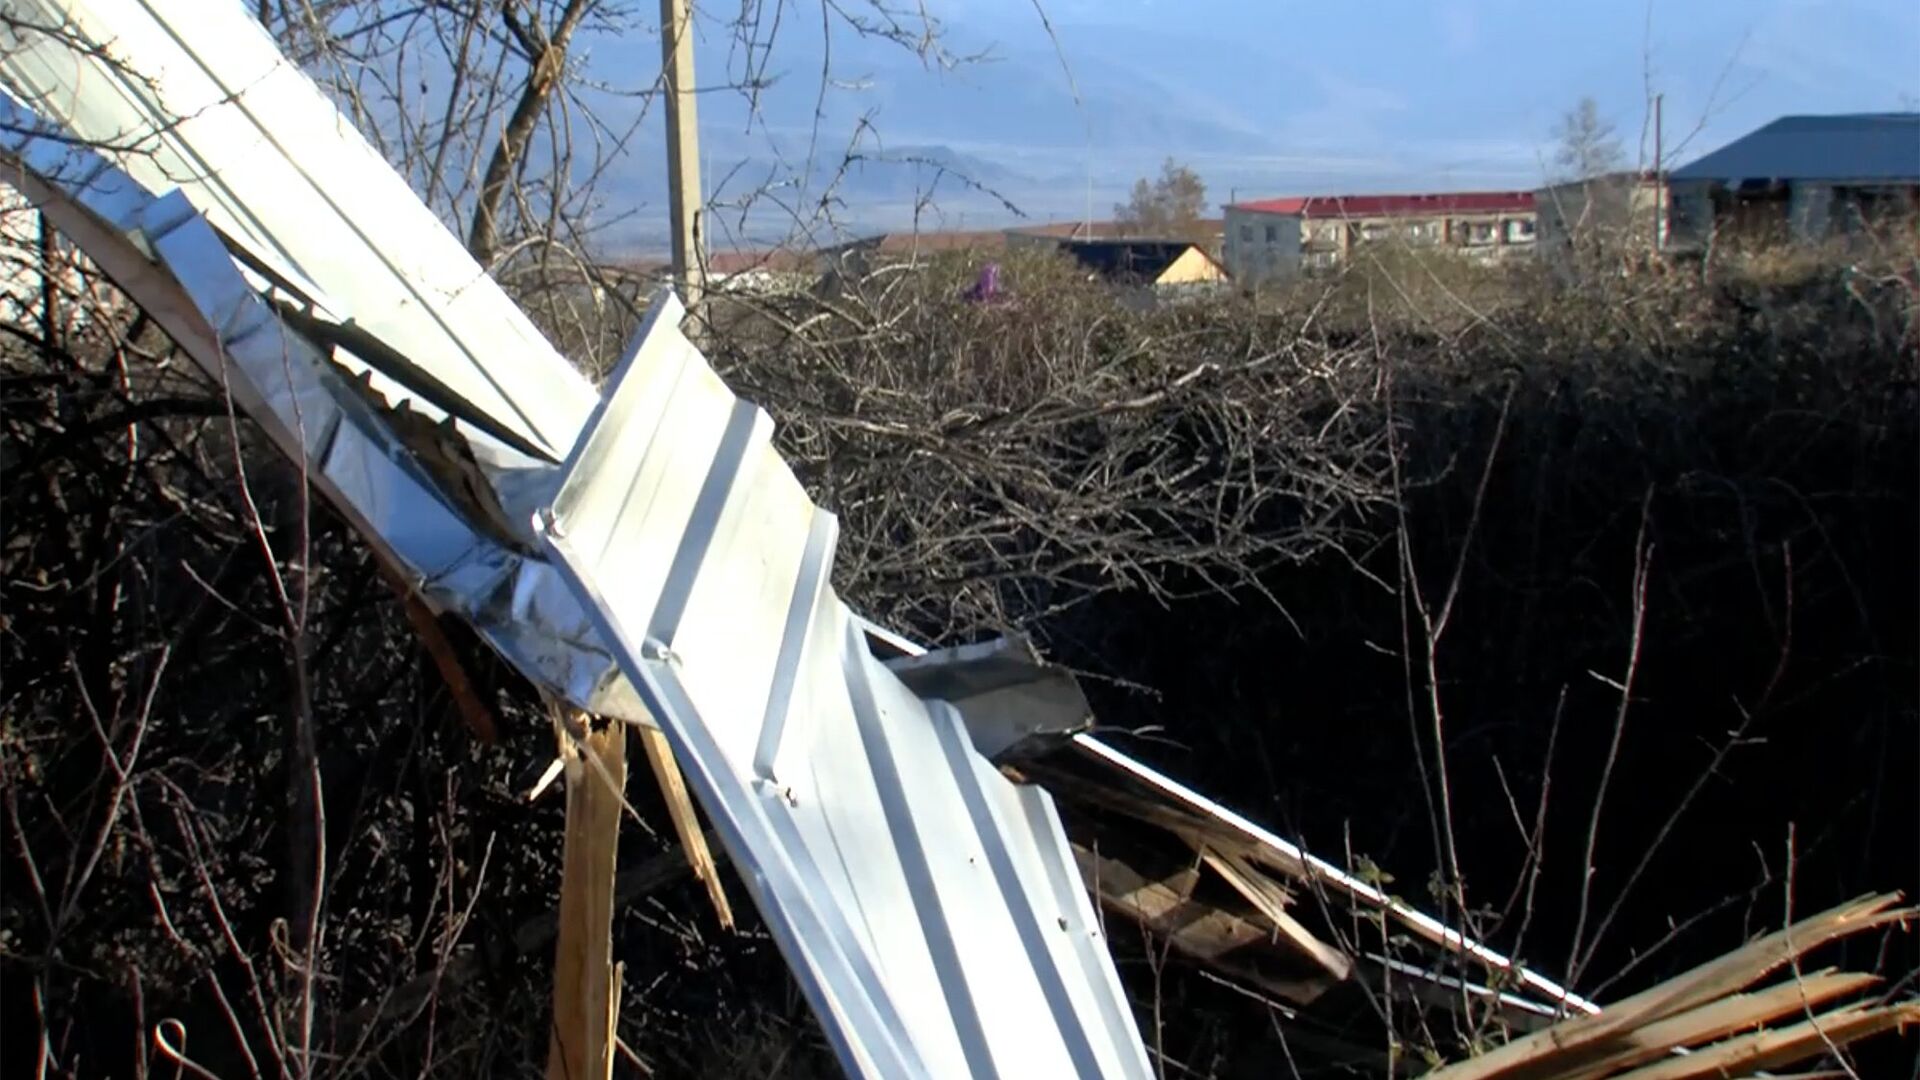 Последствия ураганного ветра в Телави - сорванные крыши - Sputnik Грузия, 1920, 22.04.2021